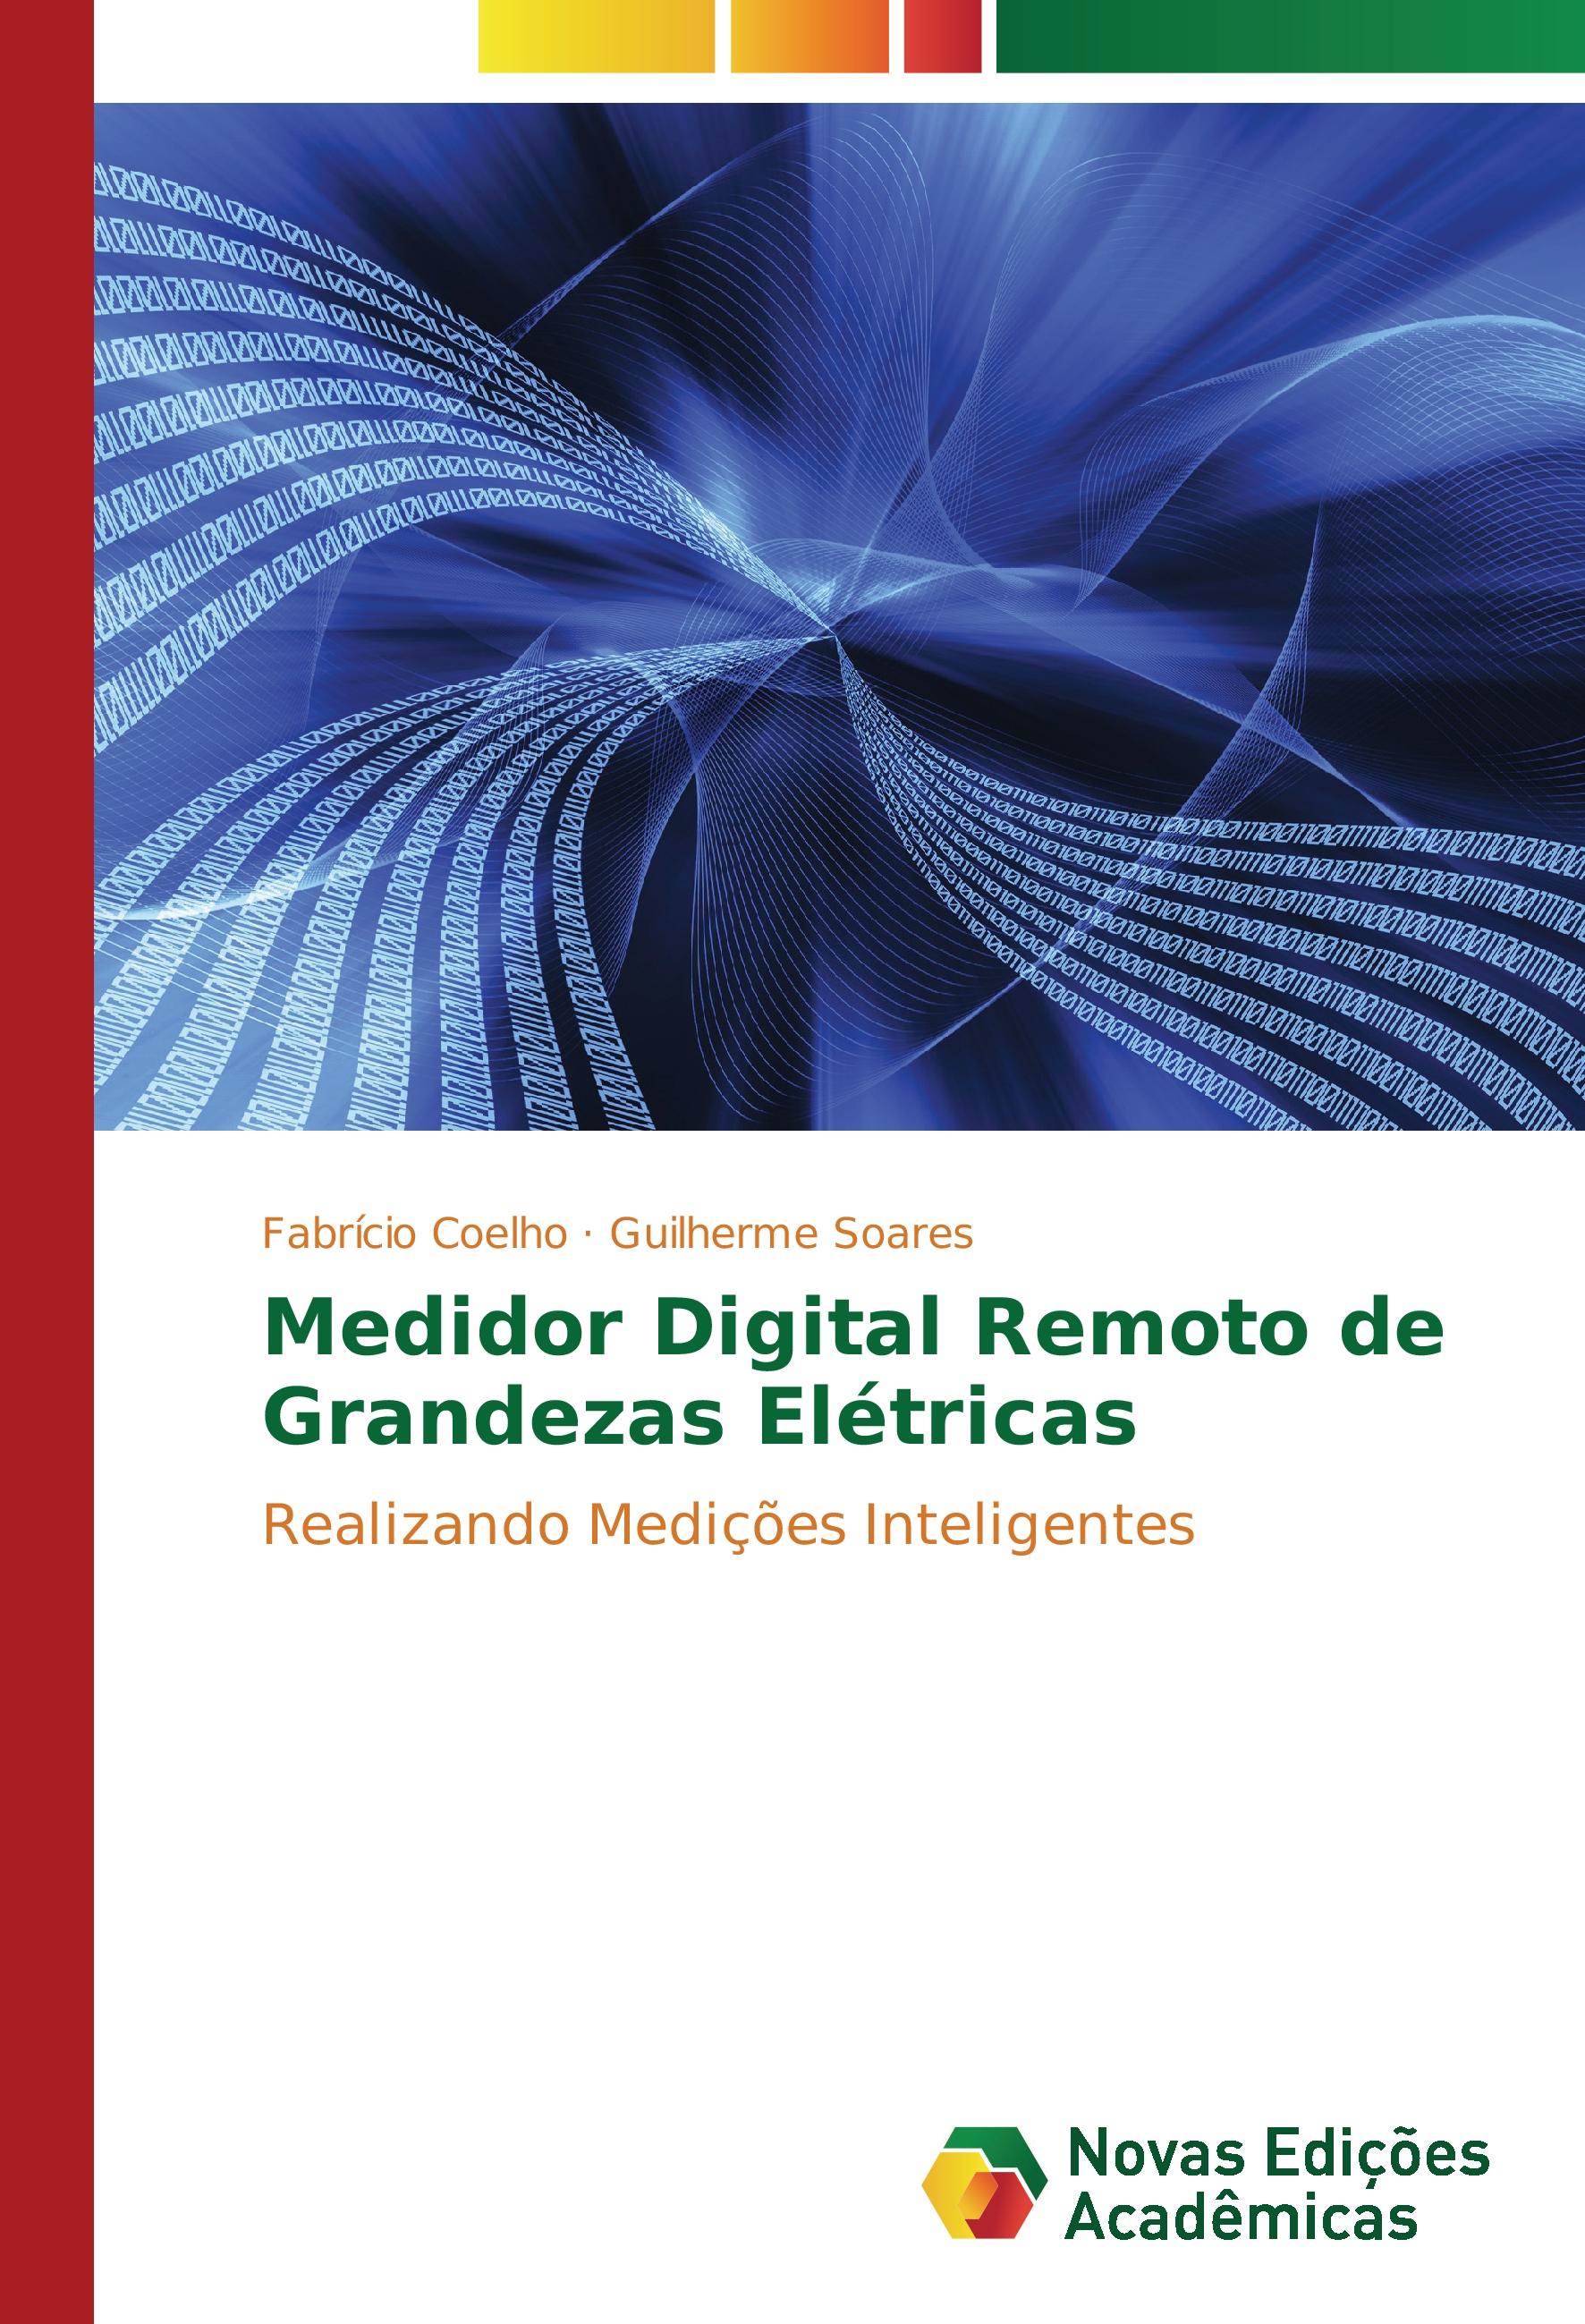 Medidor Digital Remoto de Grandezas Elétricas - Fabrício Coelho Guilherme Soares